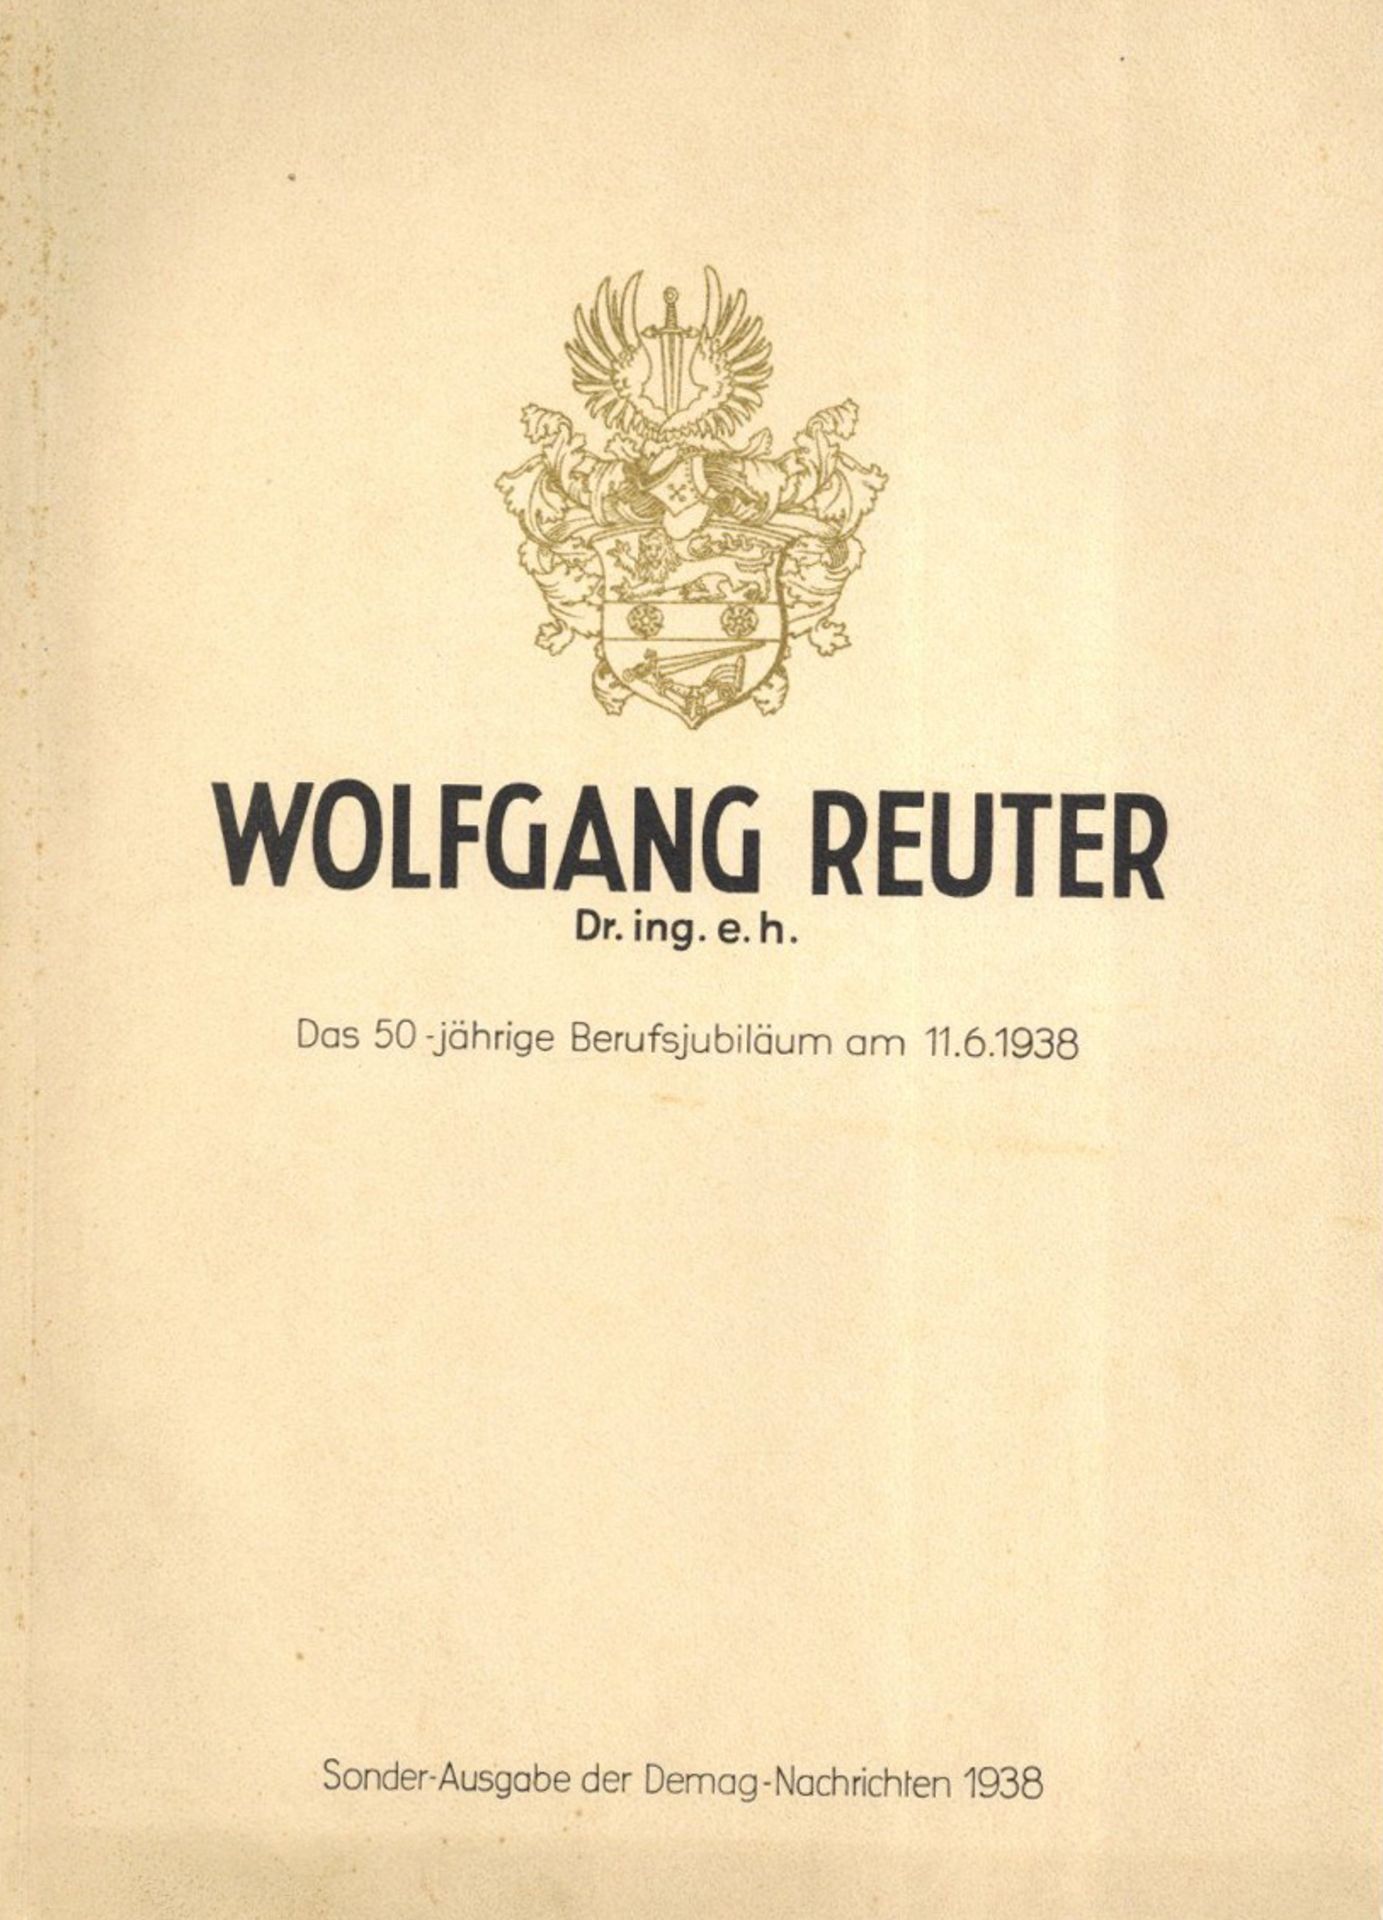 Buch WK II Duisburg (4100) Wolfgang Reuter Dr. ing. e.h. Festbroschüre zum 50jährigen Berufsjubiläum